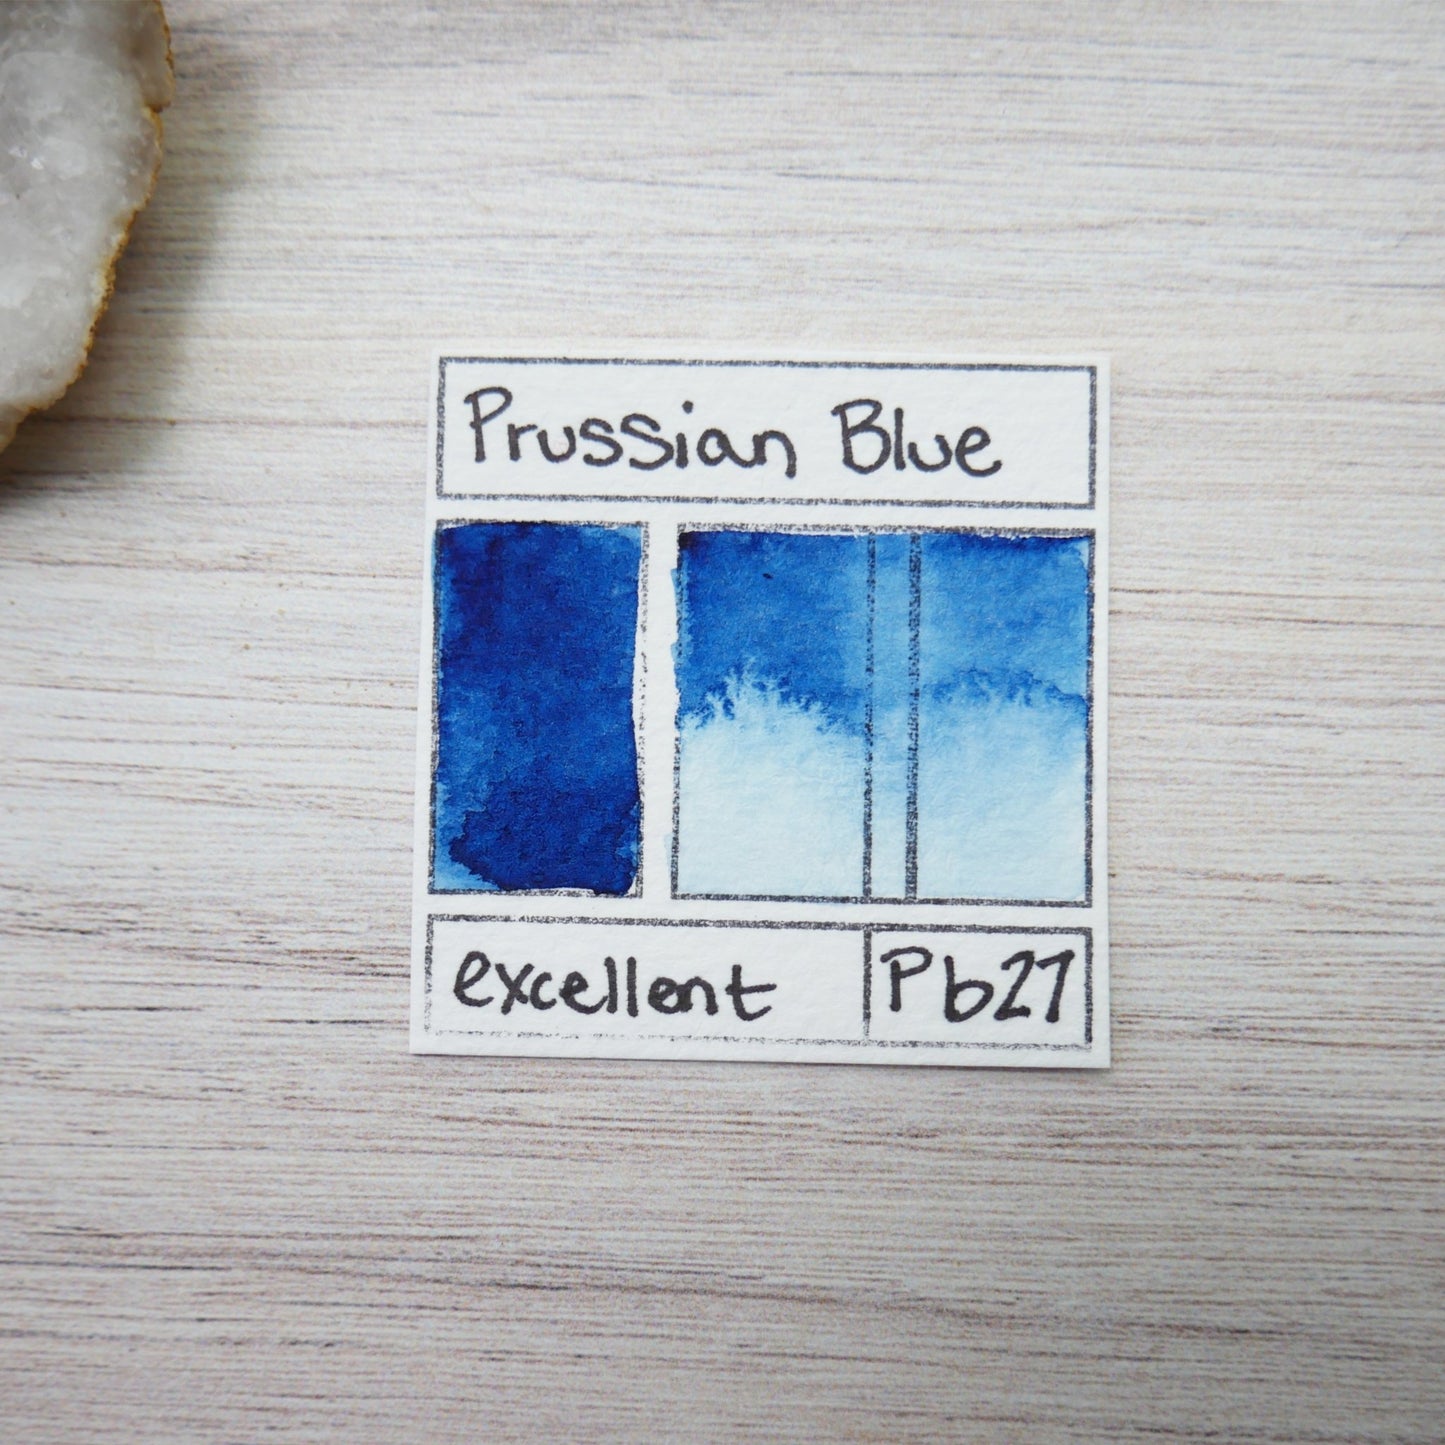 Prussian Blue. Half pan, full pan or bottle cap of handmade watercolor paint